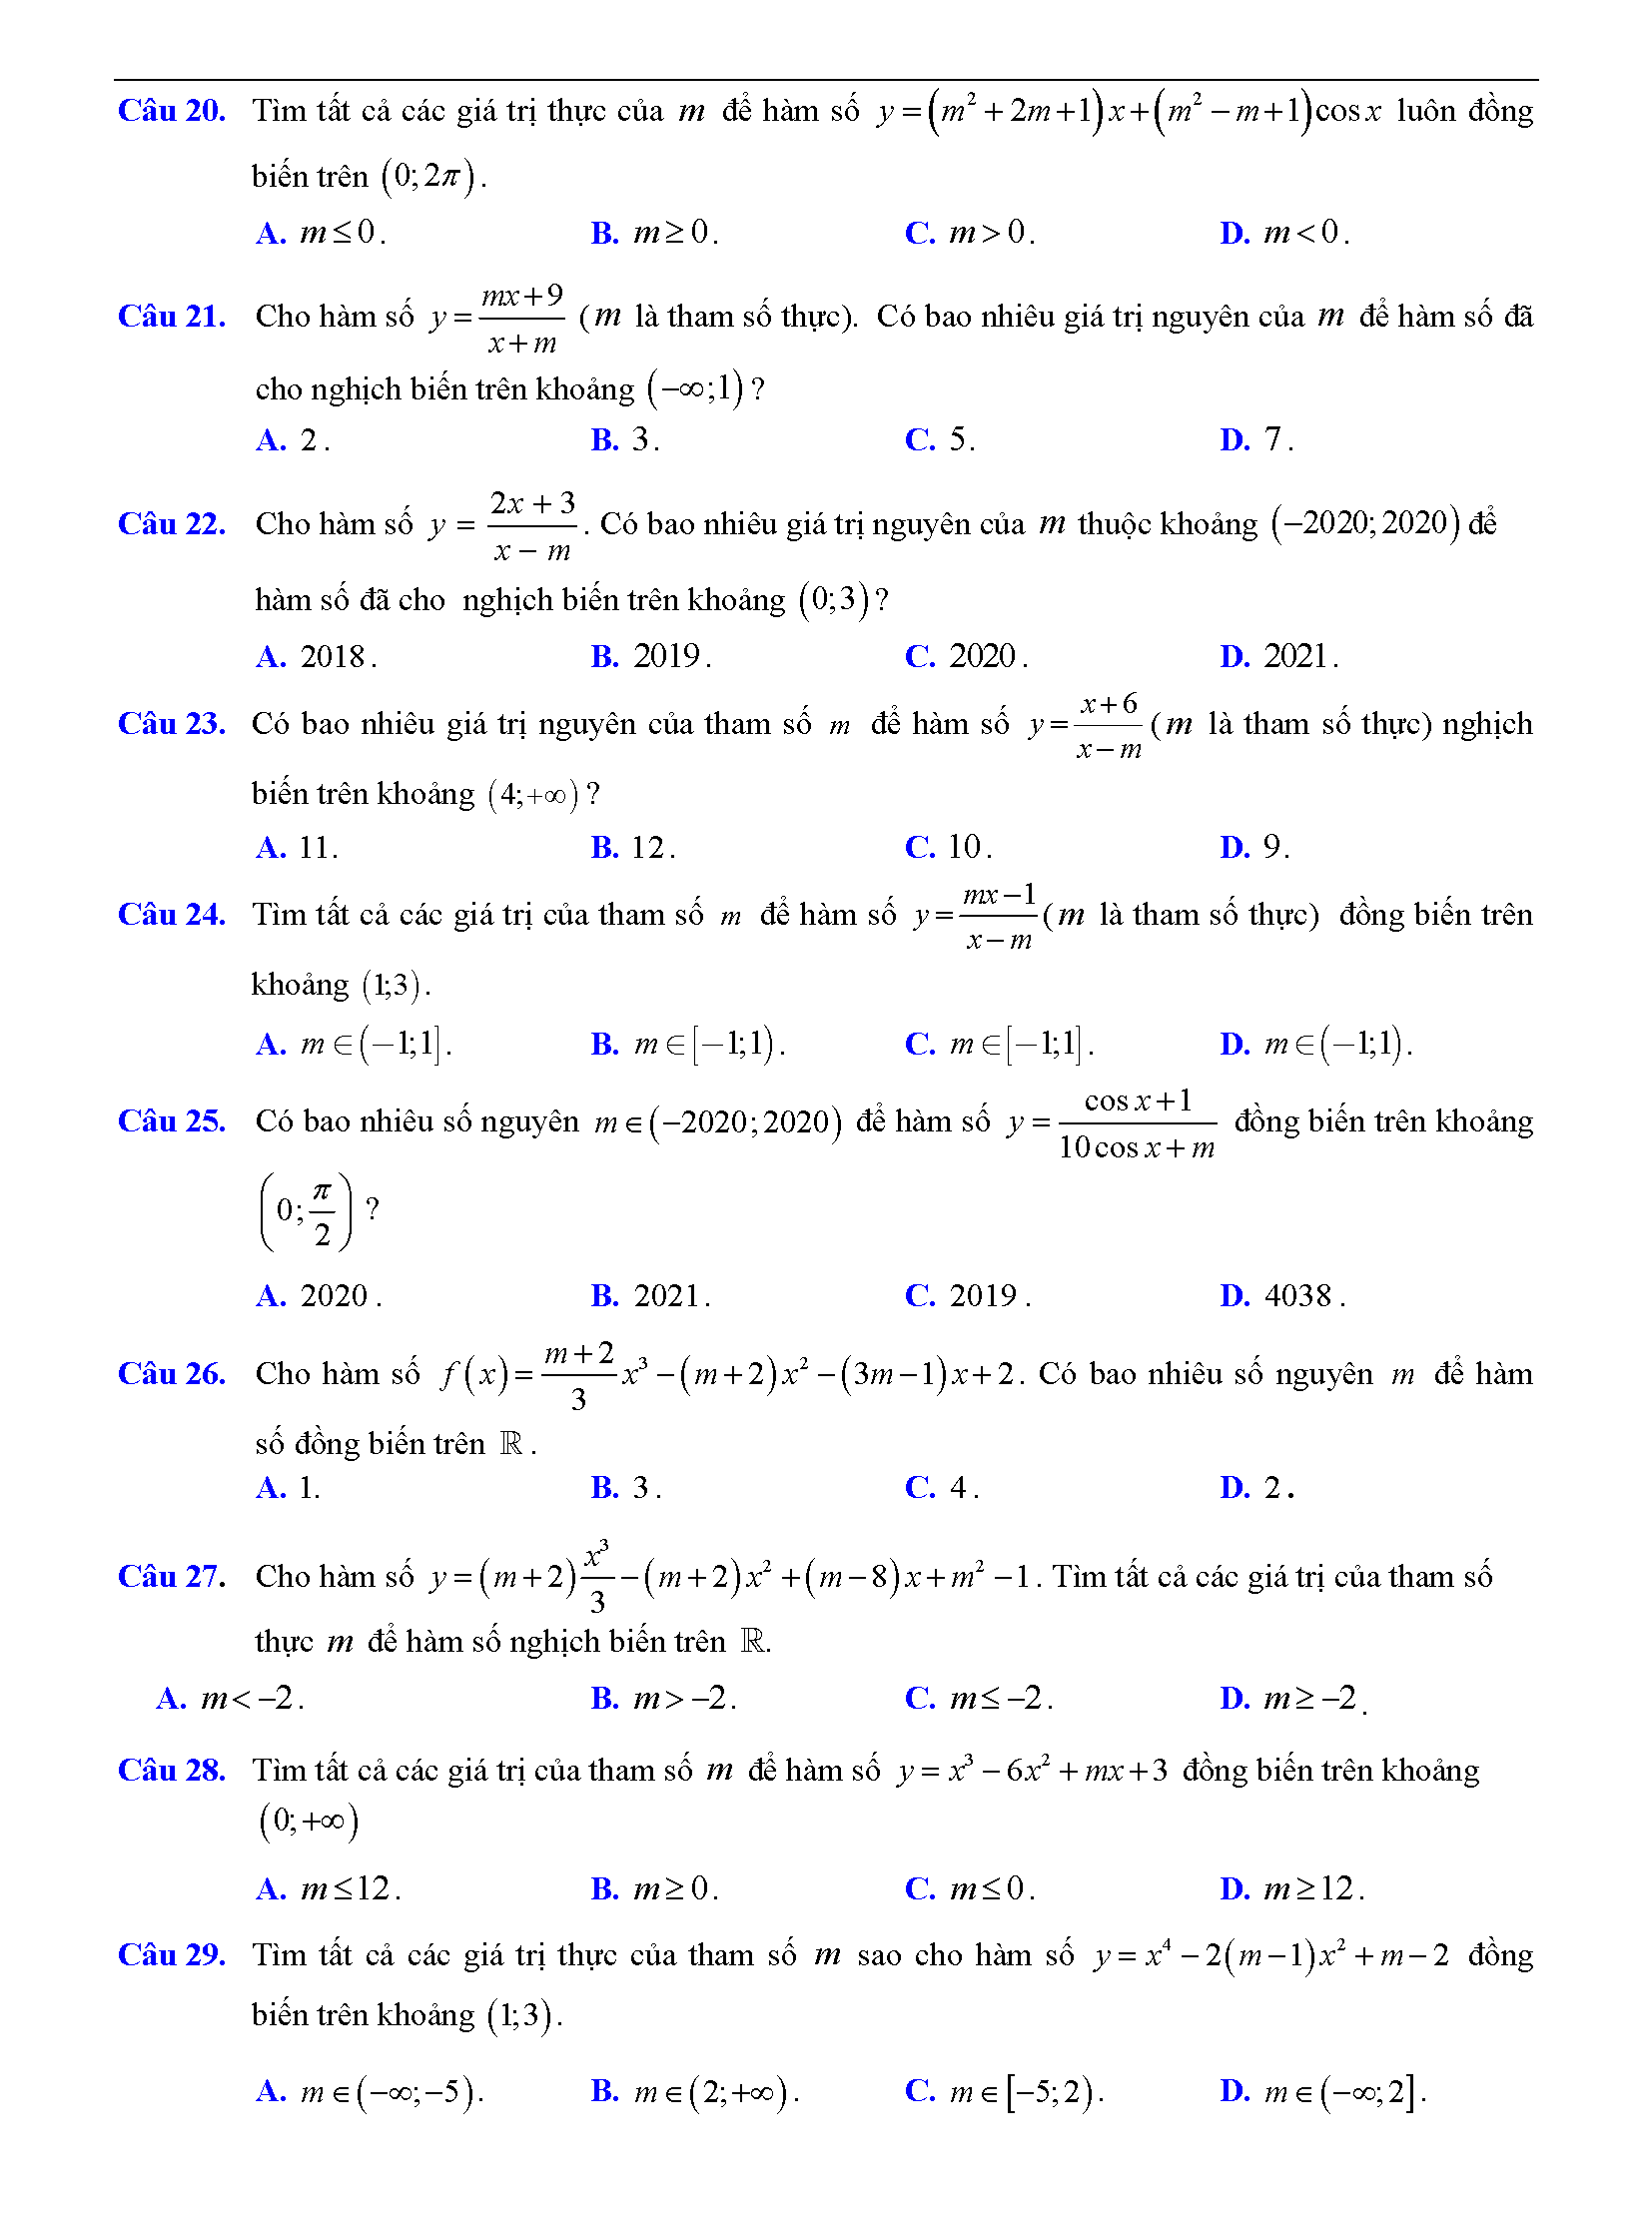 Trắc nghiệm tìm m để hàm số đơn điệu 3